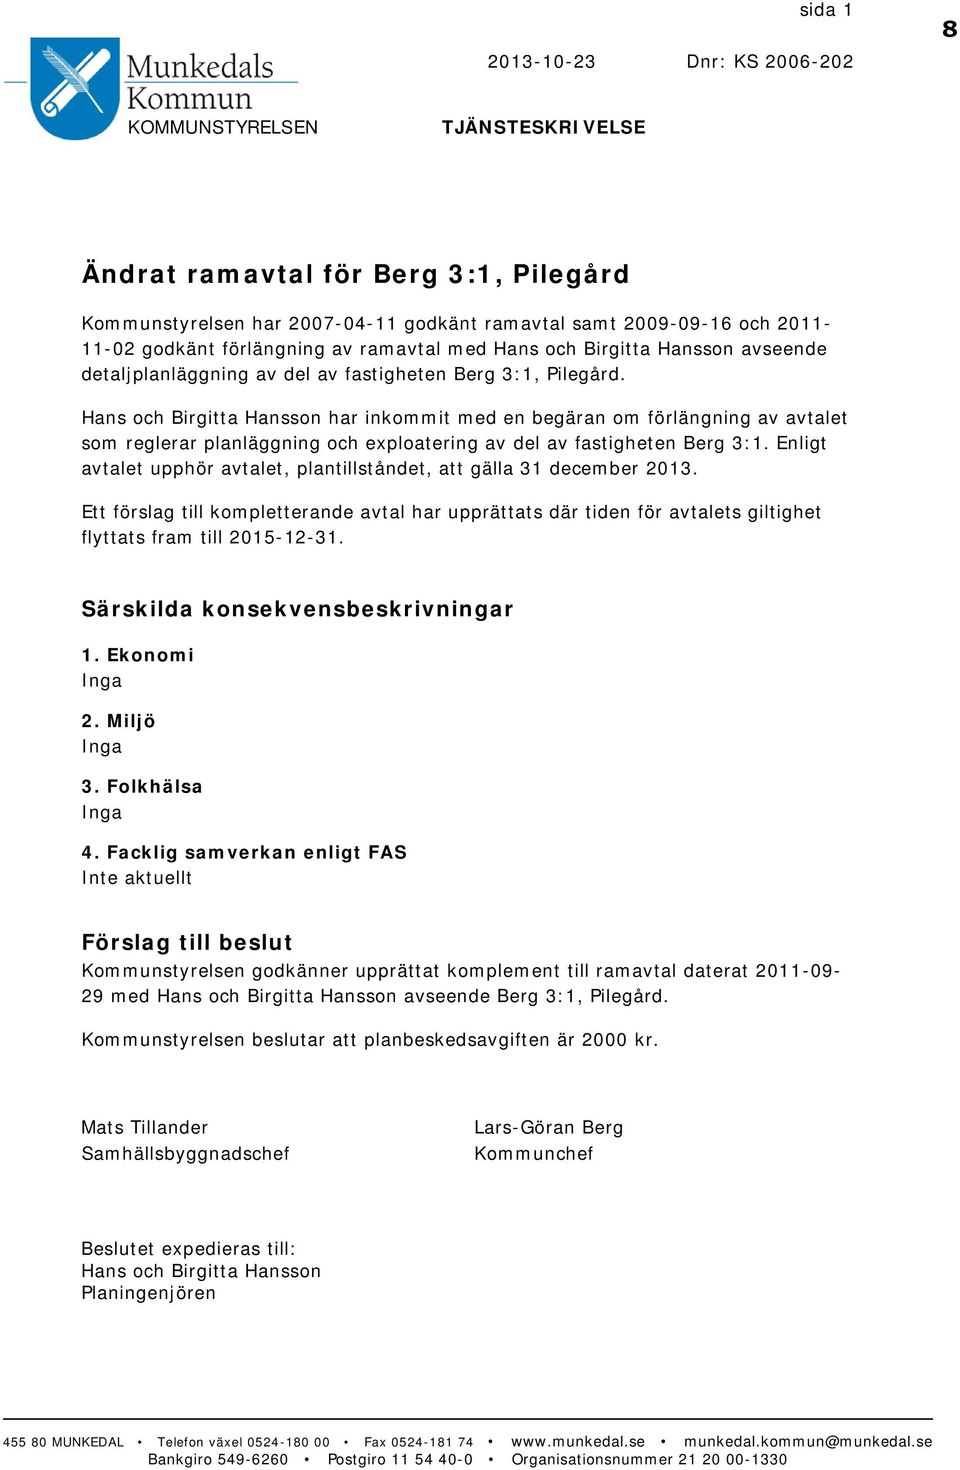 Hans och Birgitta Hansson har inkommit med en begäran om förlängning av avtalet som reglerar planläggning och exploatering av del av fastigheten Berg 3:1.